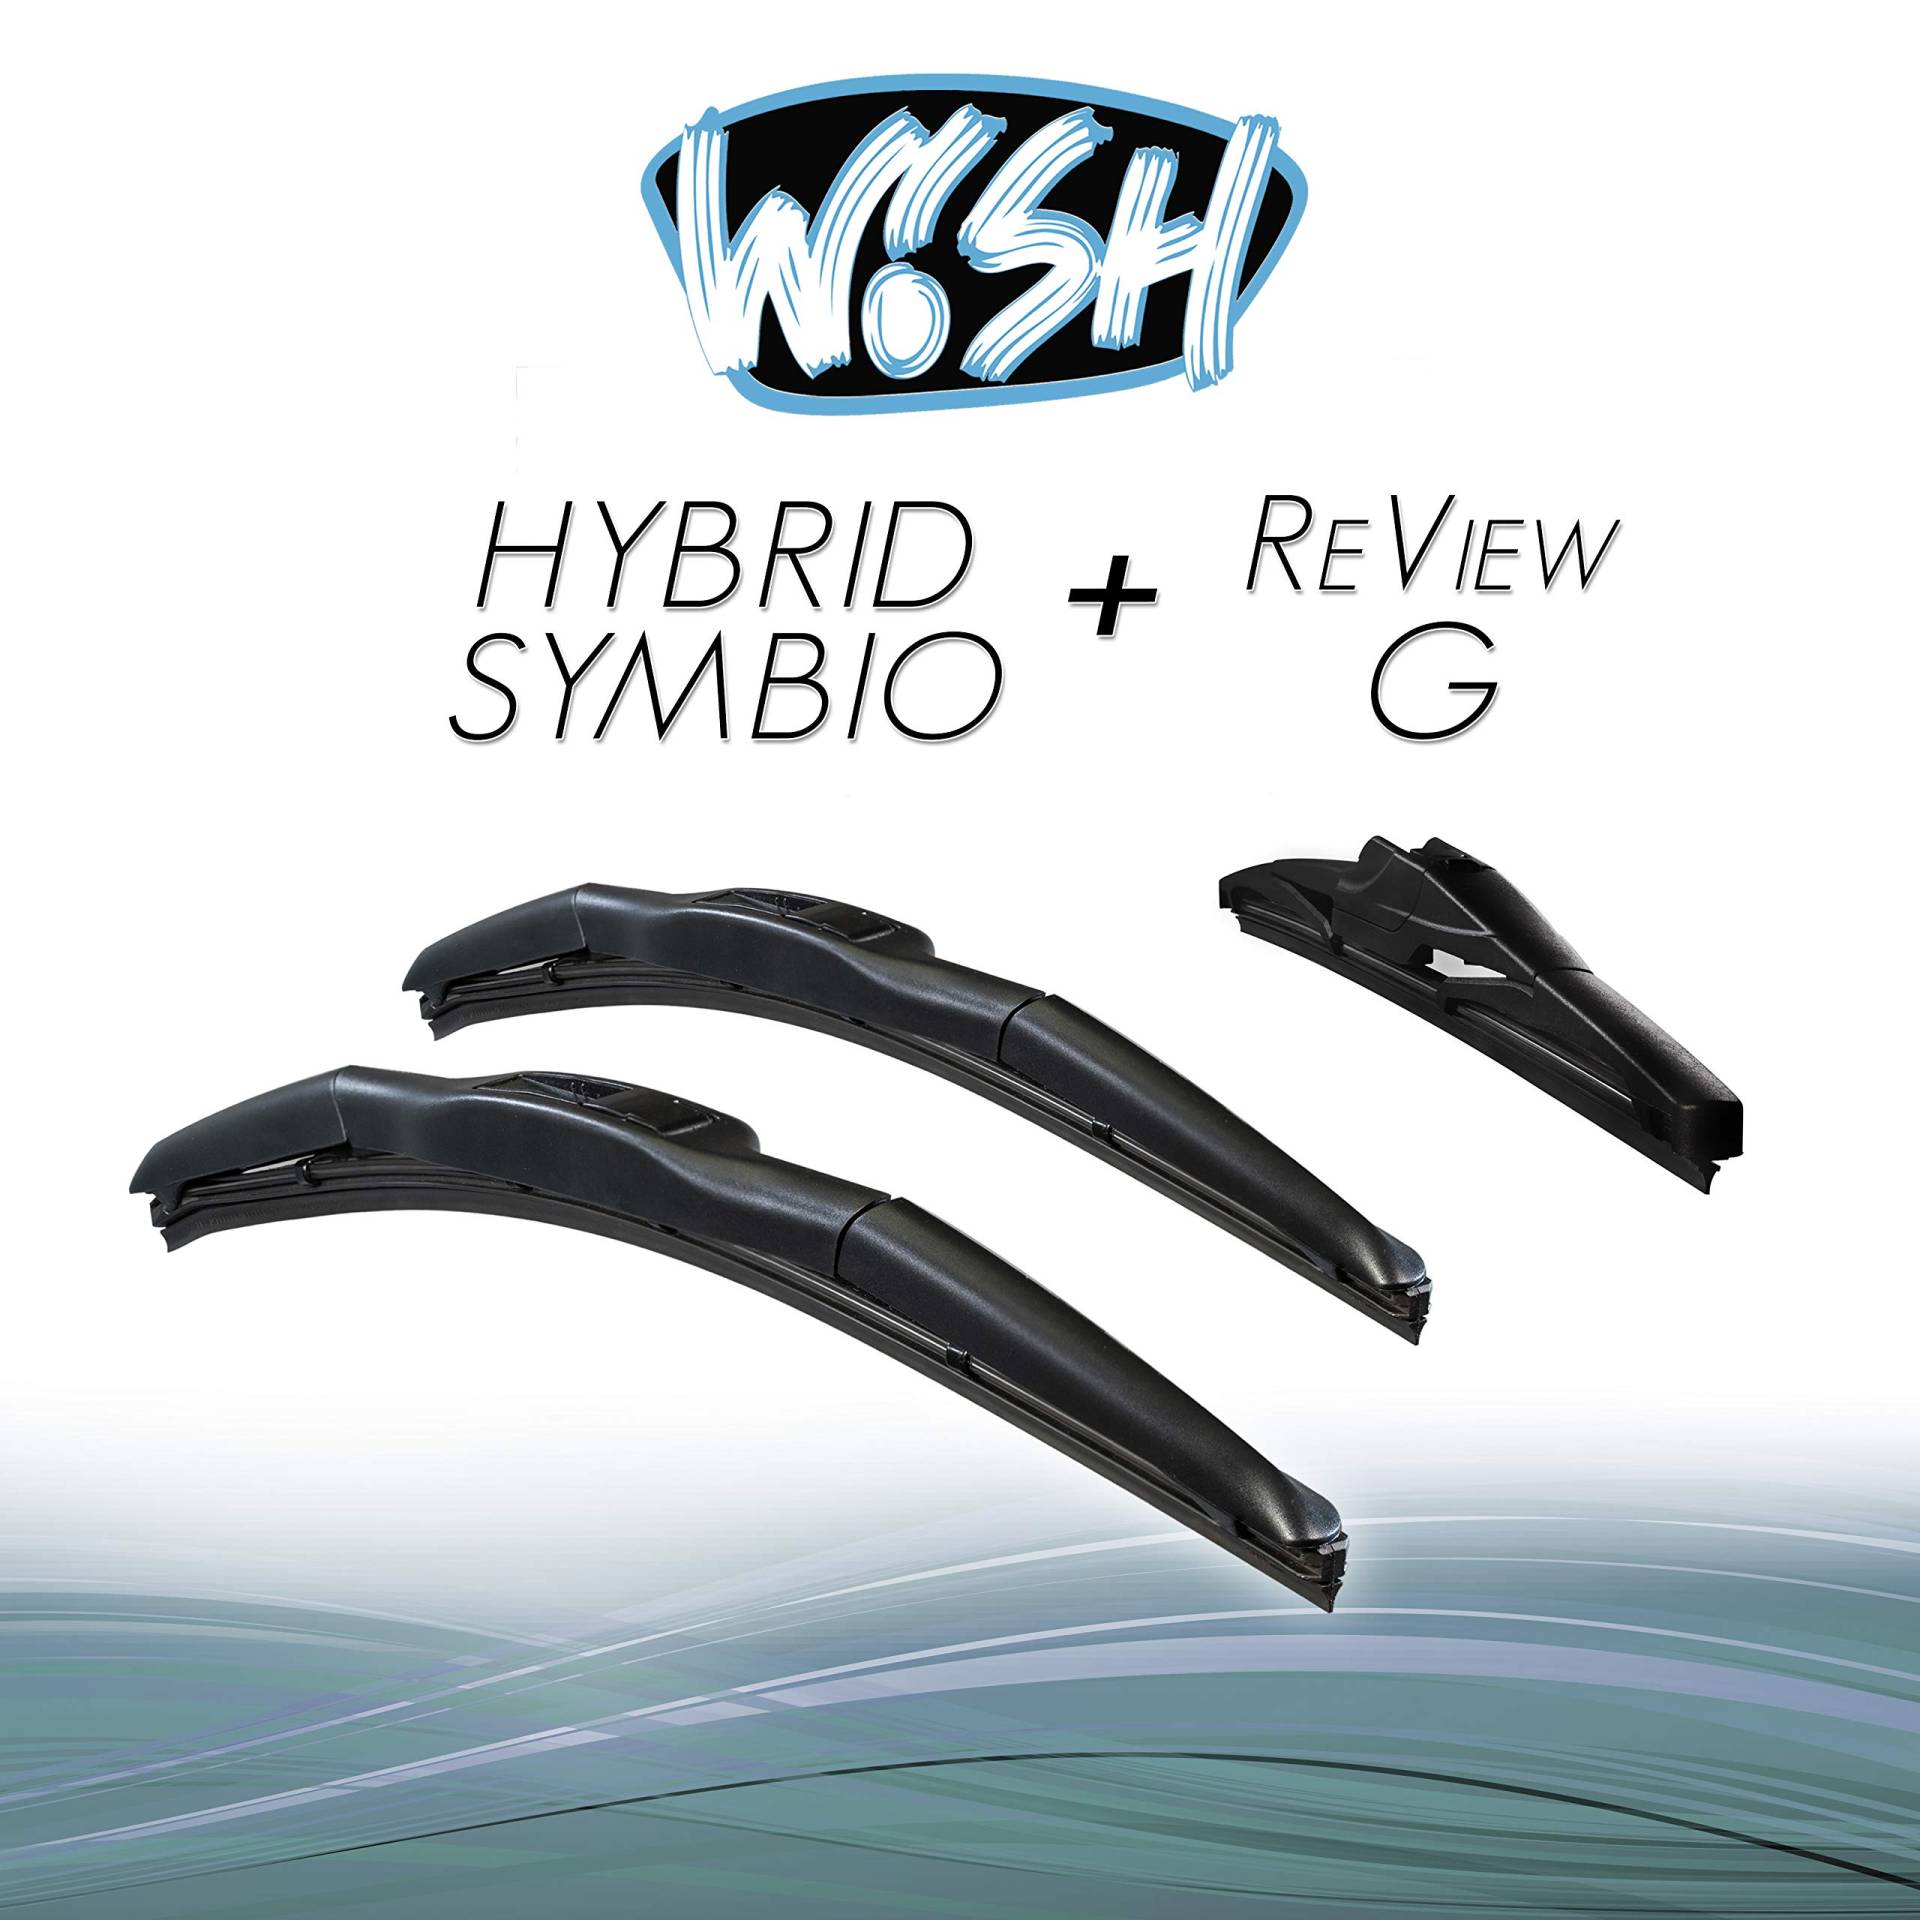 Wish® Hybrid Symbio Satz Front + Heck Scheibenwischer Länge: 18" 450mm / 18" 450mm / 10" 250mm Wischblätter Vorne und Hinten Hybrid-Scheibenwischer + Review G HS18.18.10RG von Wish